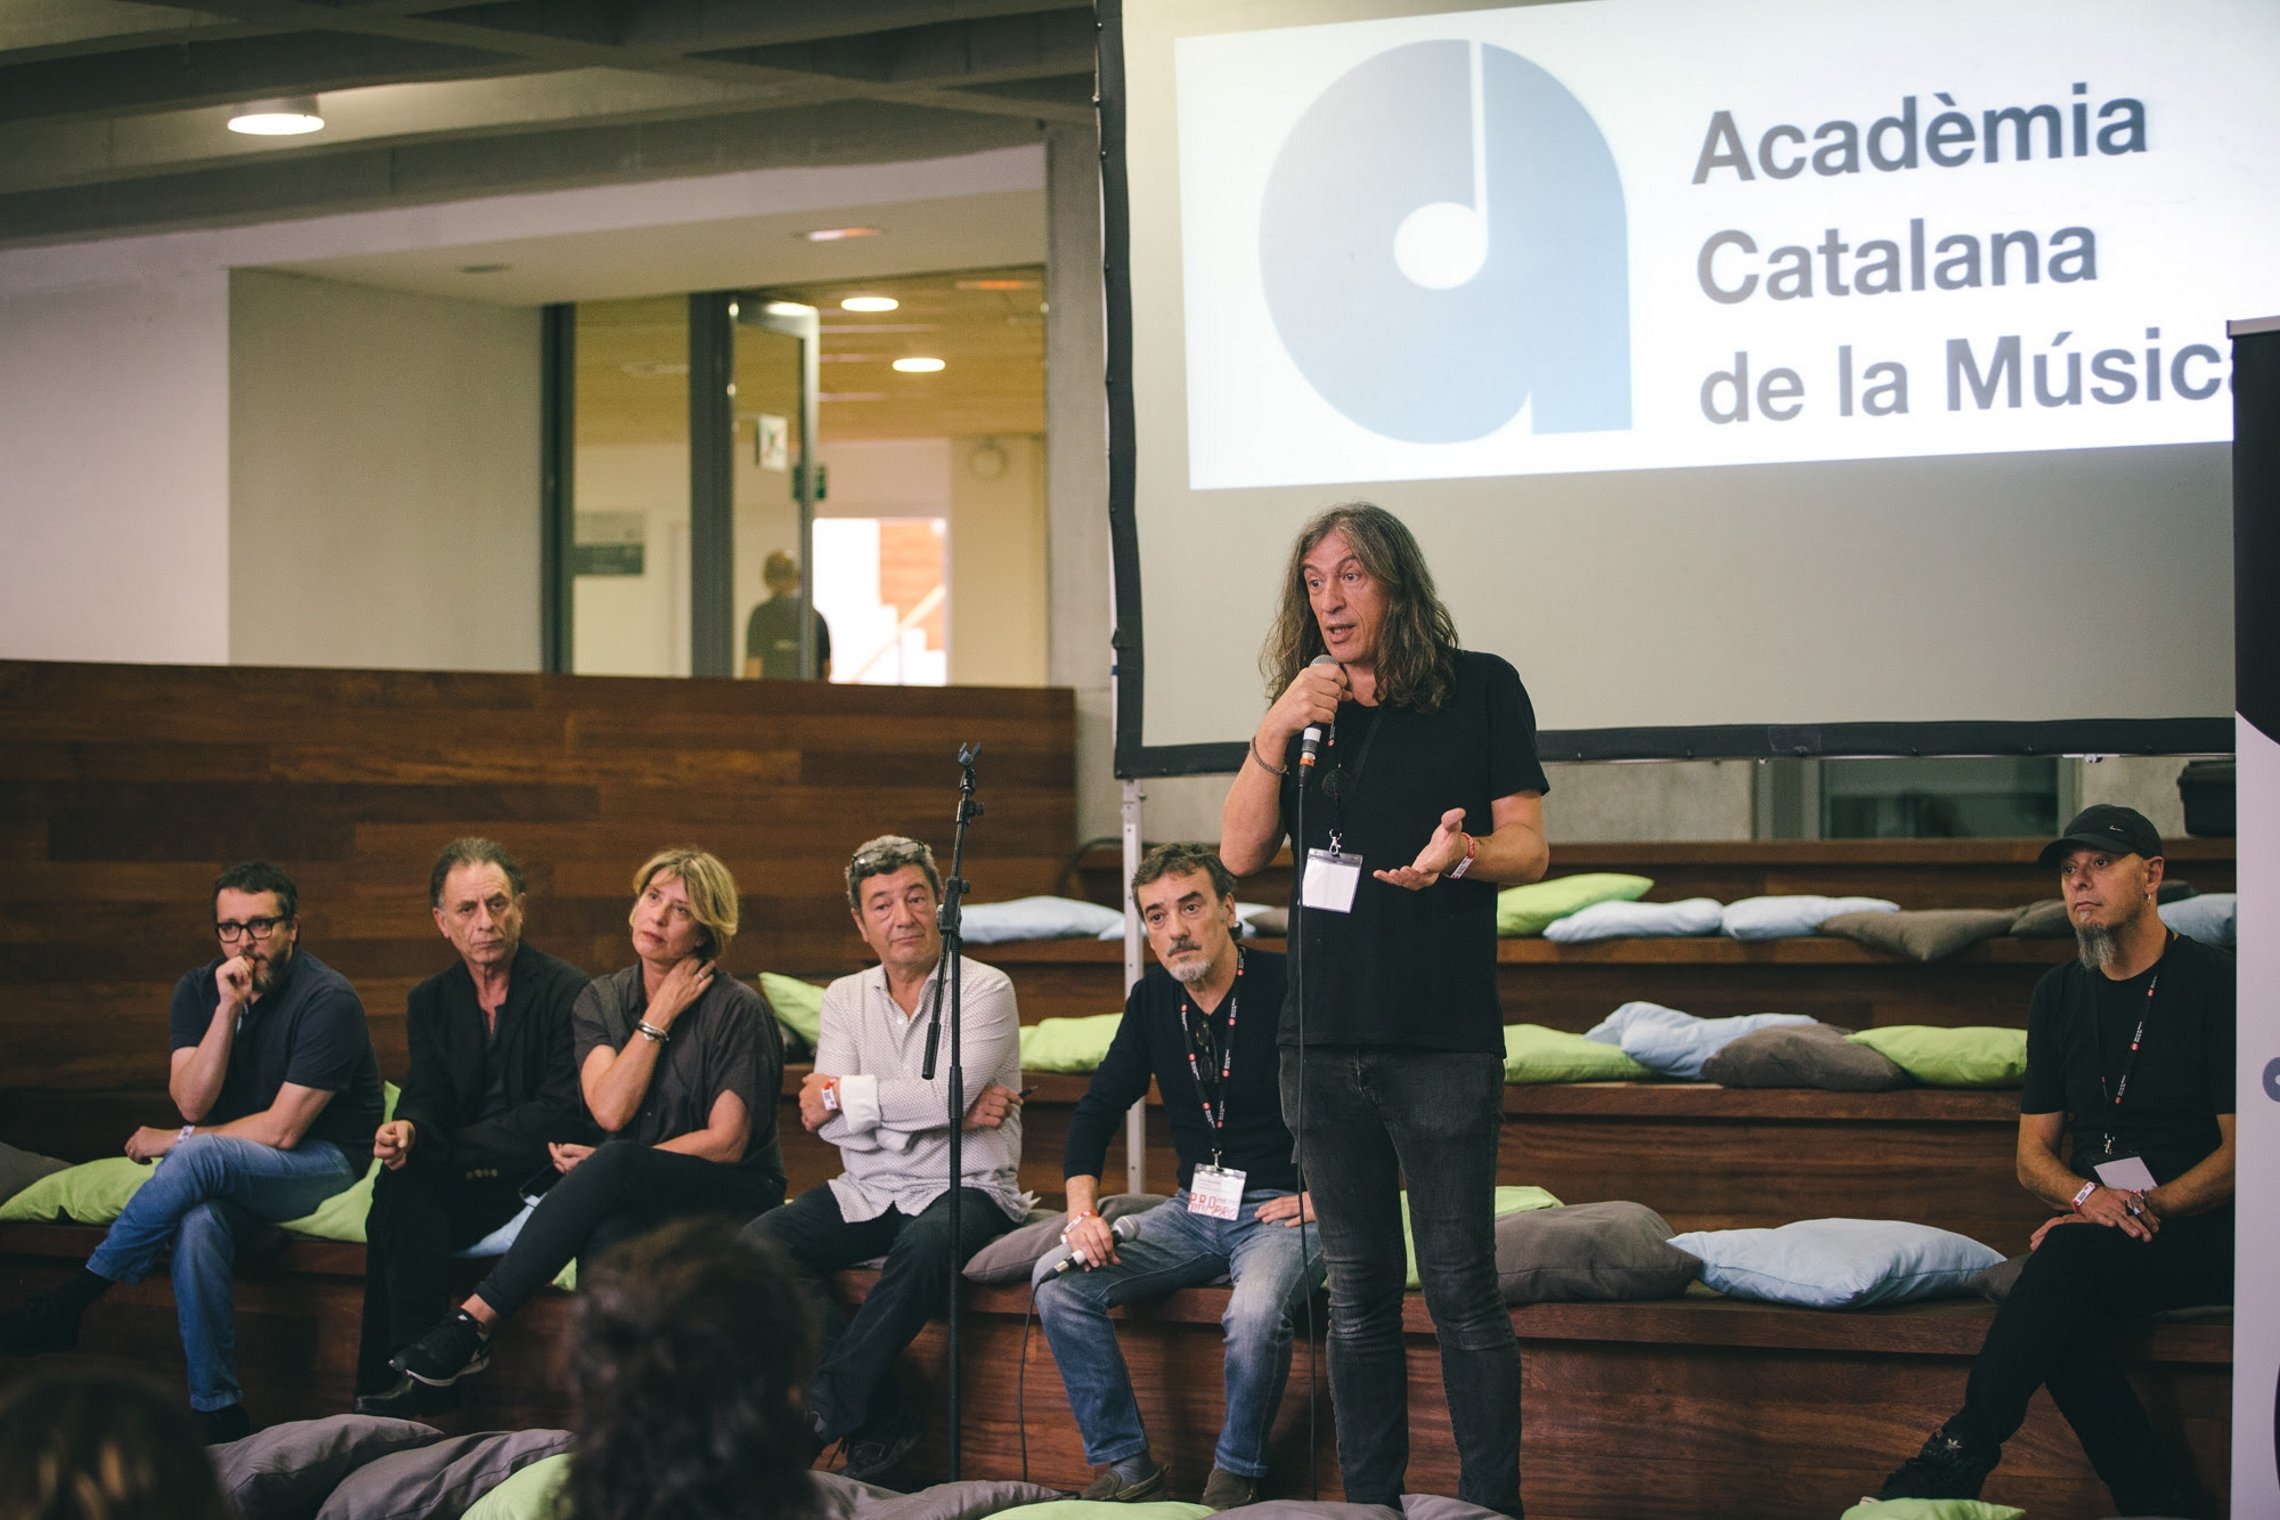 La Academia Catalana de la Música organiza un foro en noviembre